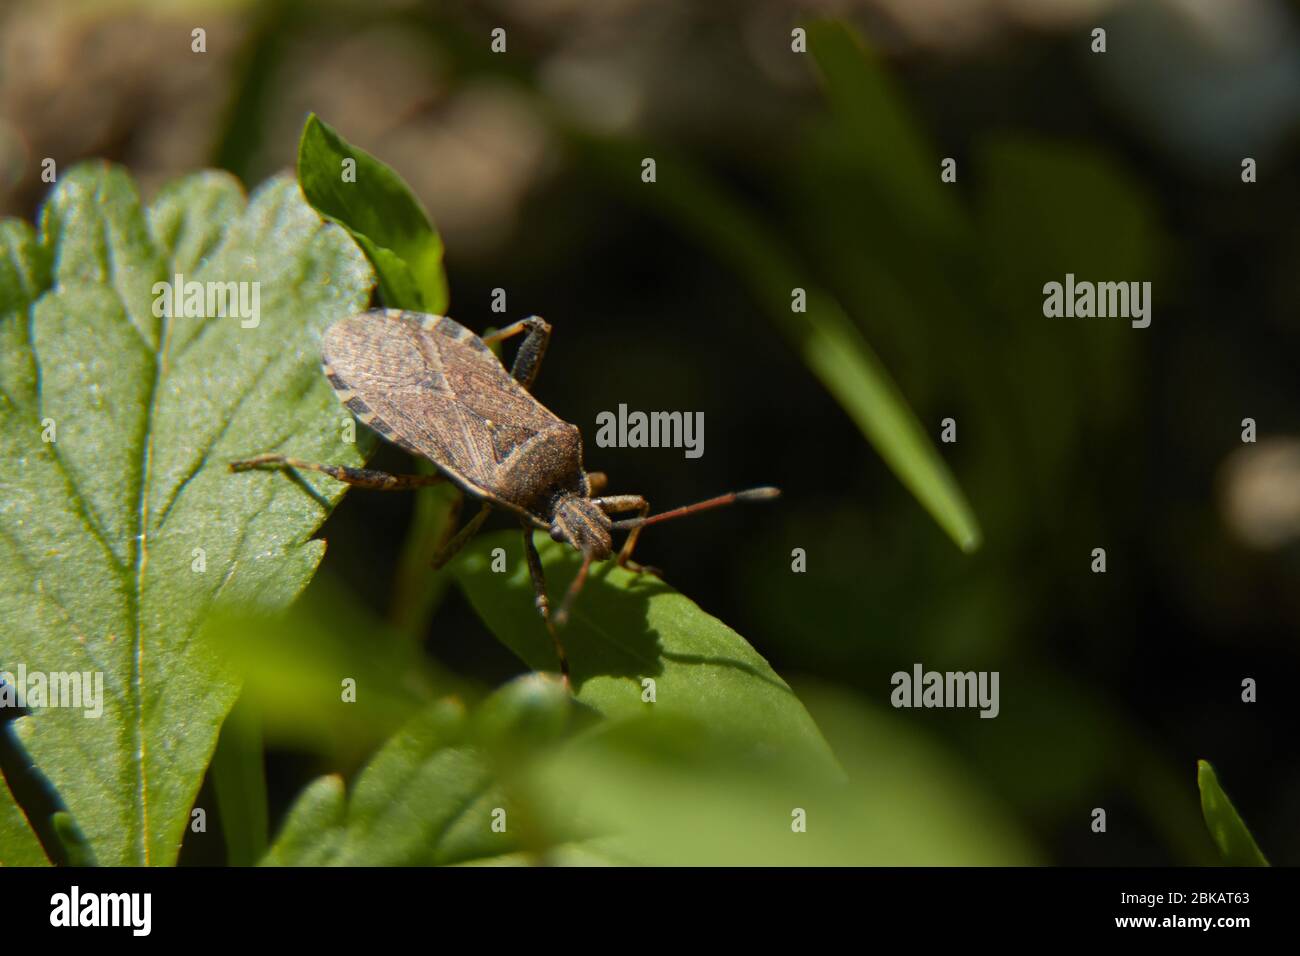 Un bug che si impalata sui foglietti Foto Stock